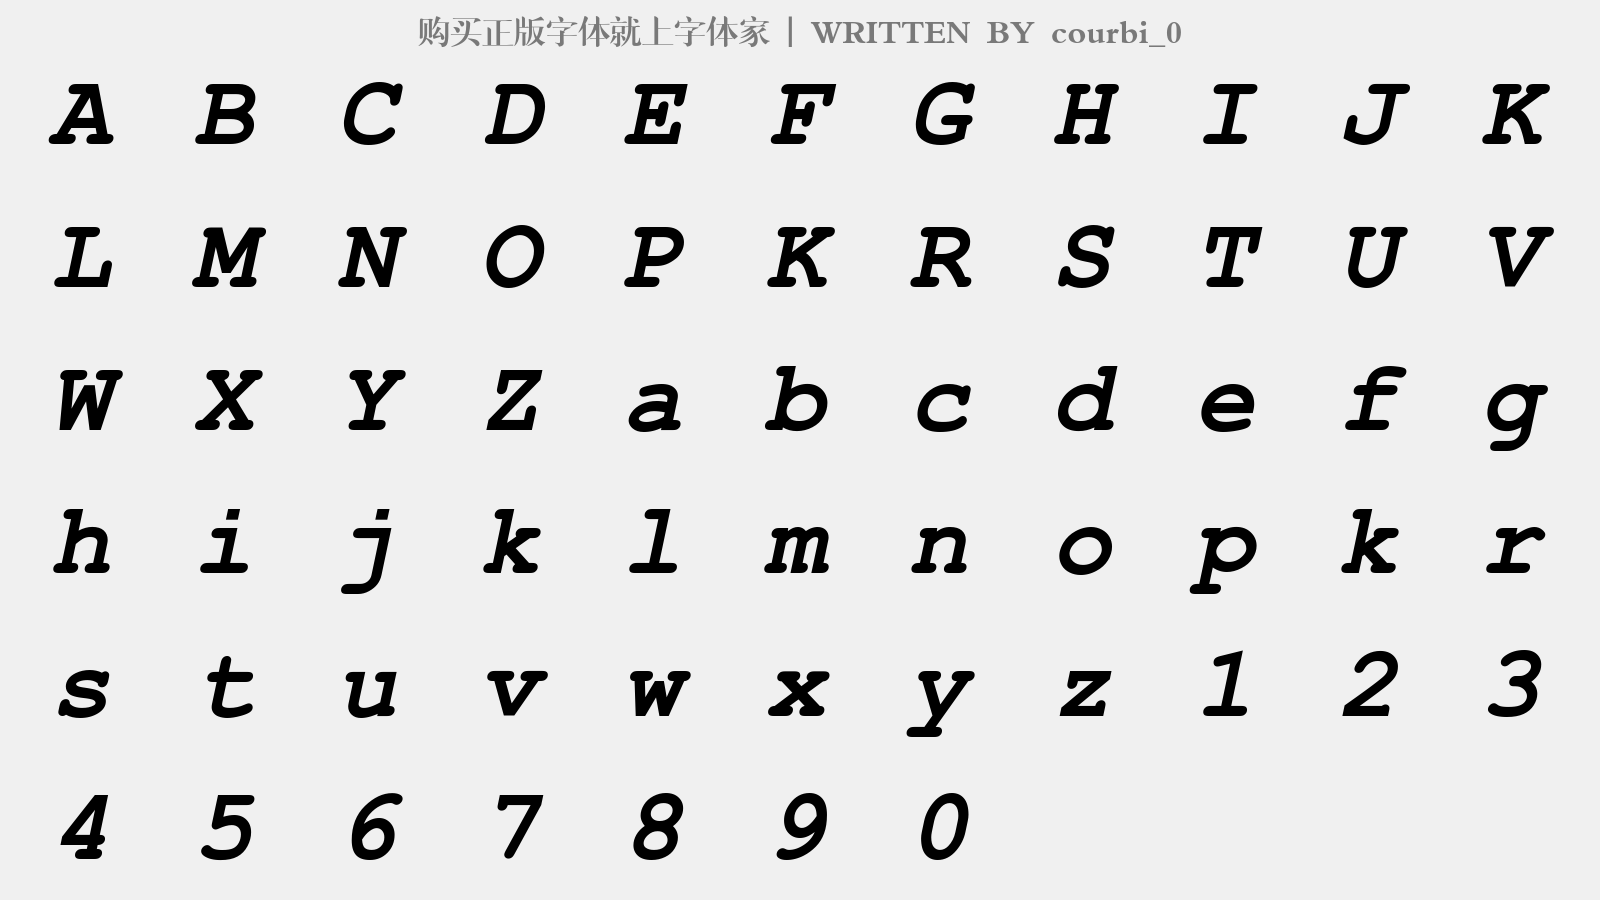 courbi_0 - 大写字母/小写字母/数字